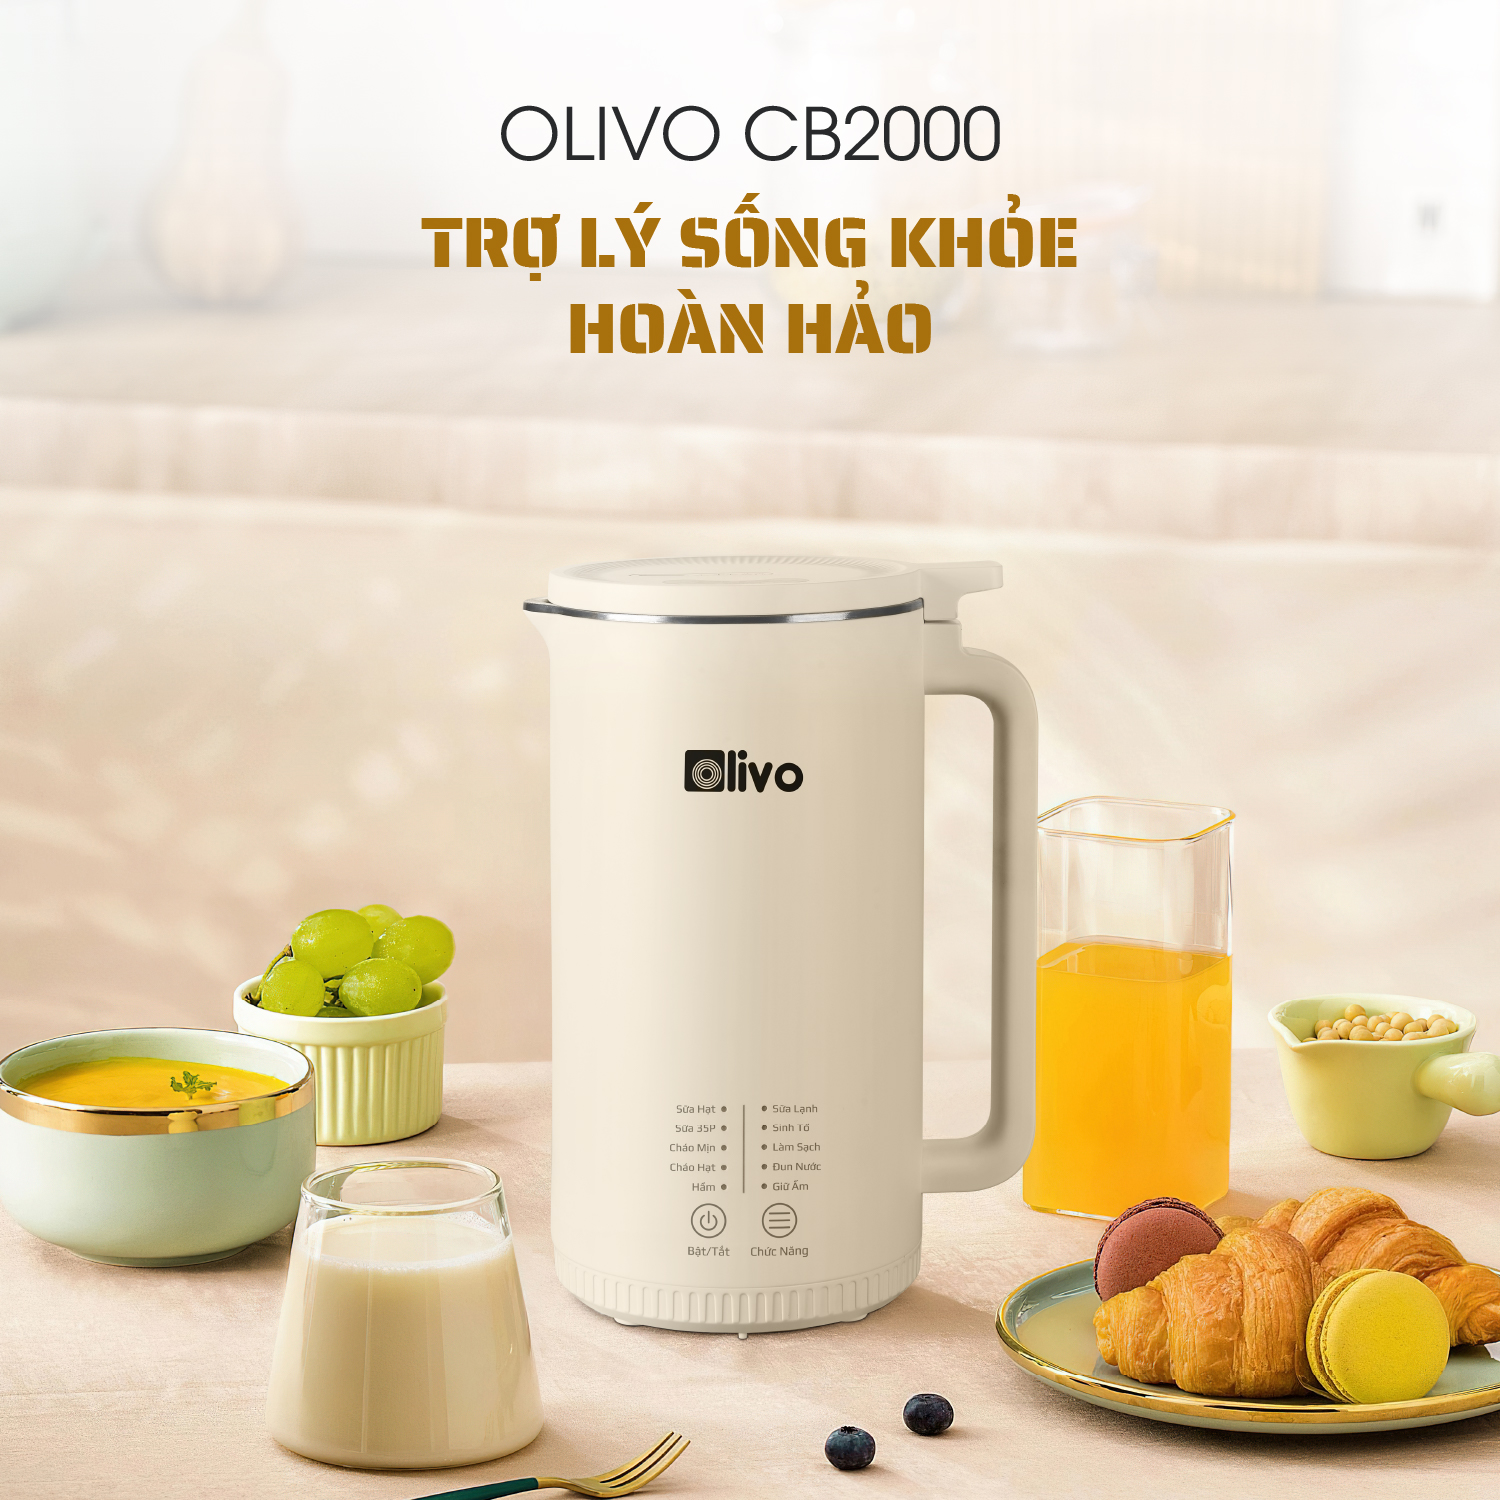 Máy làm sữa hạt OLIVO CB2000 dung tích 1000ml có nhiều chức năng nhất thị trường